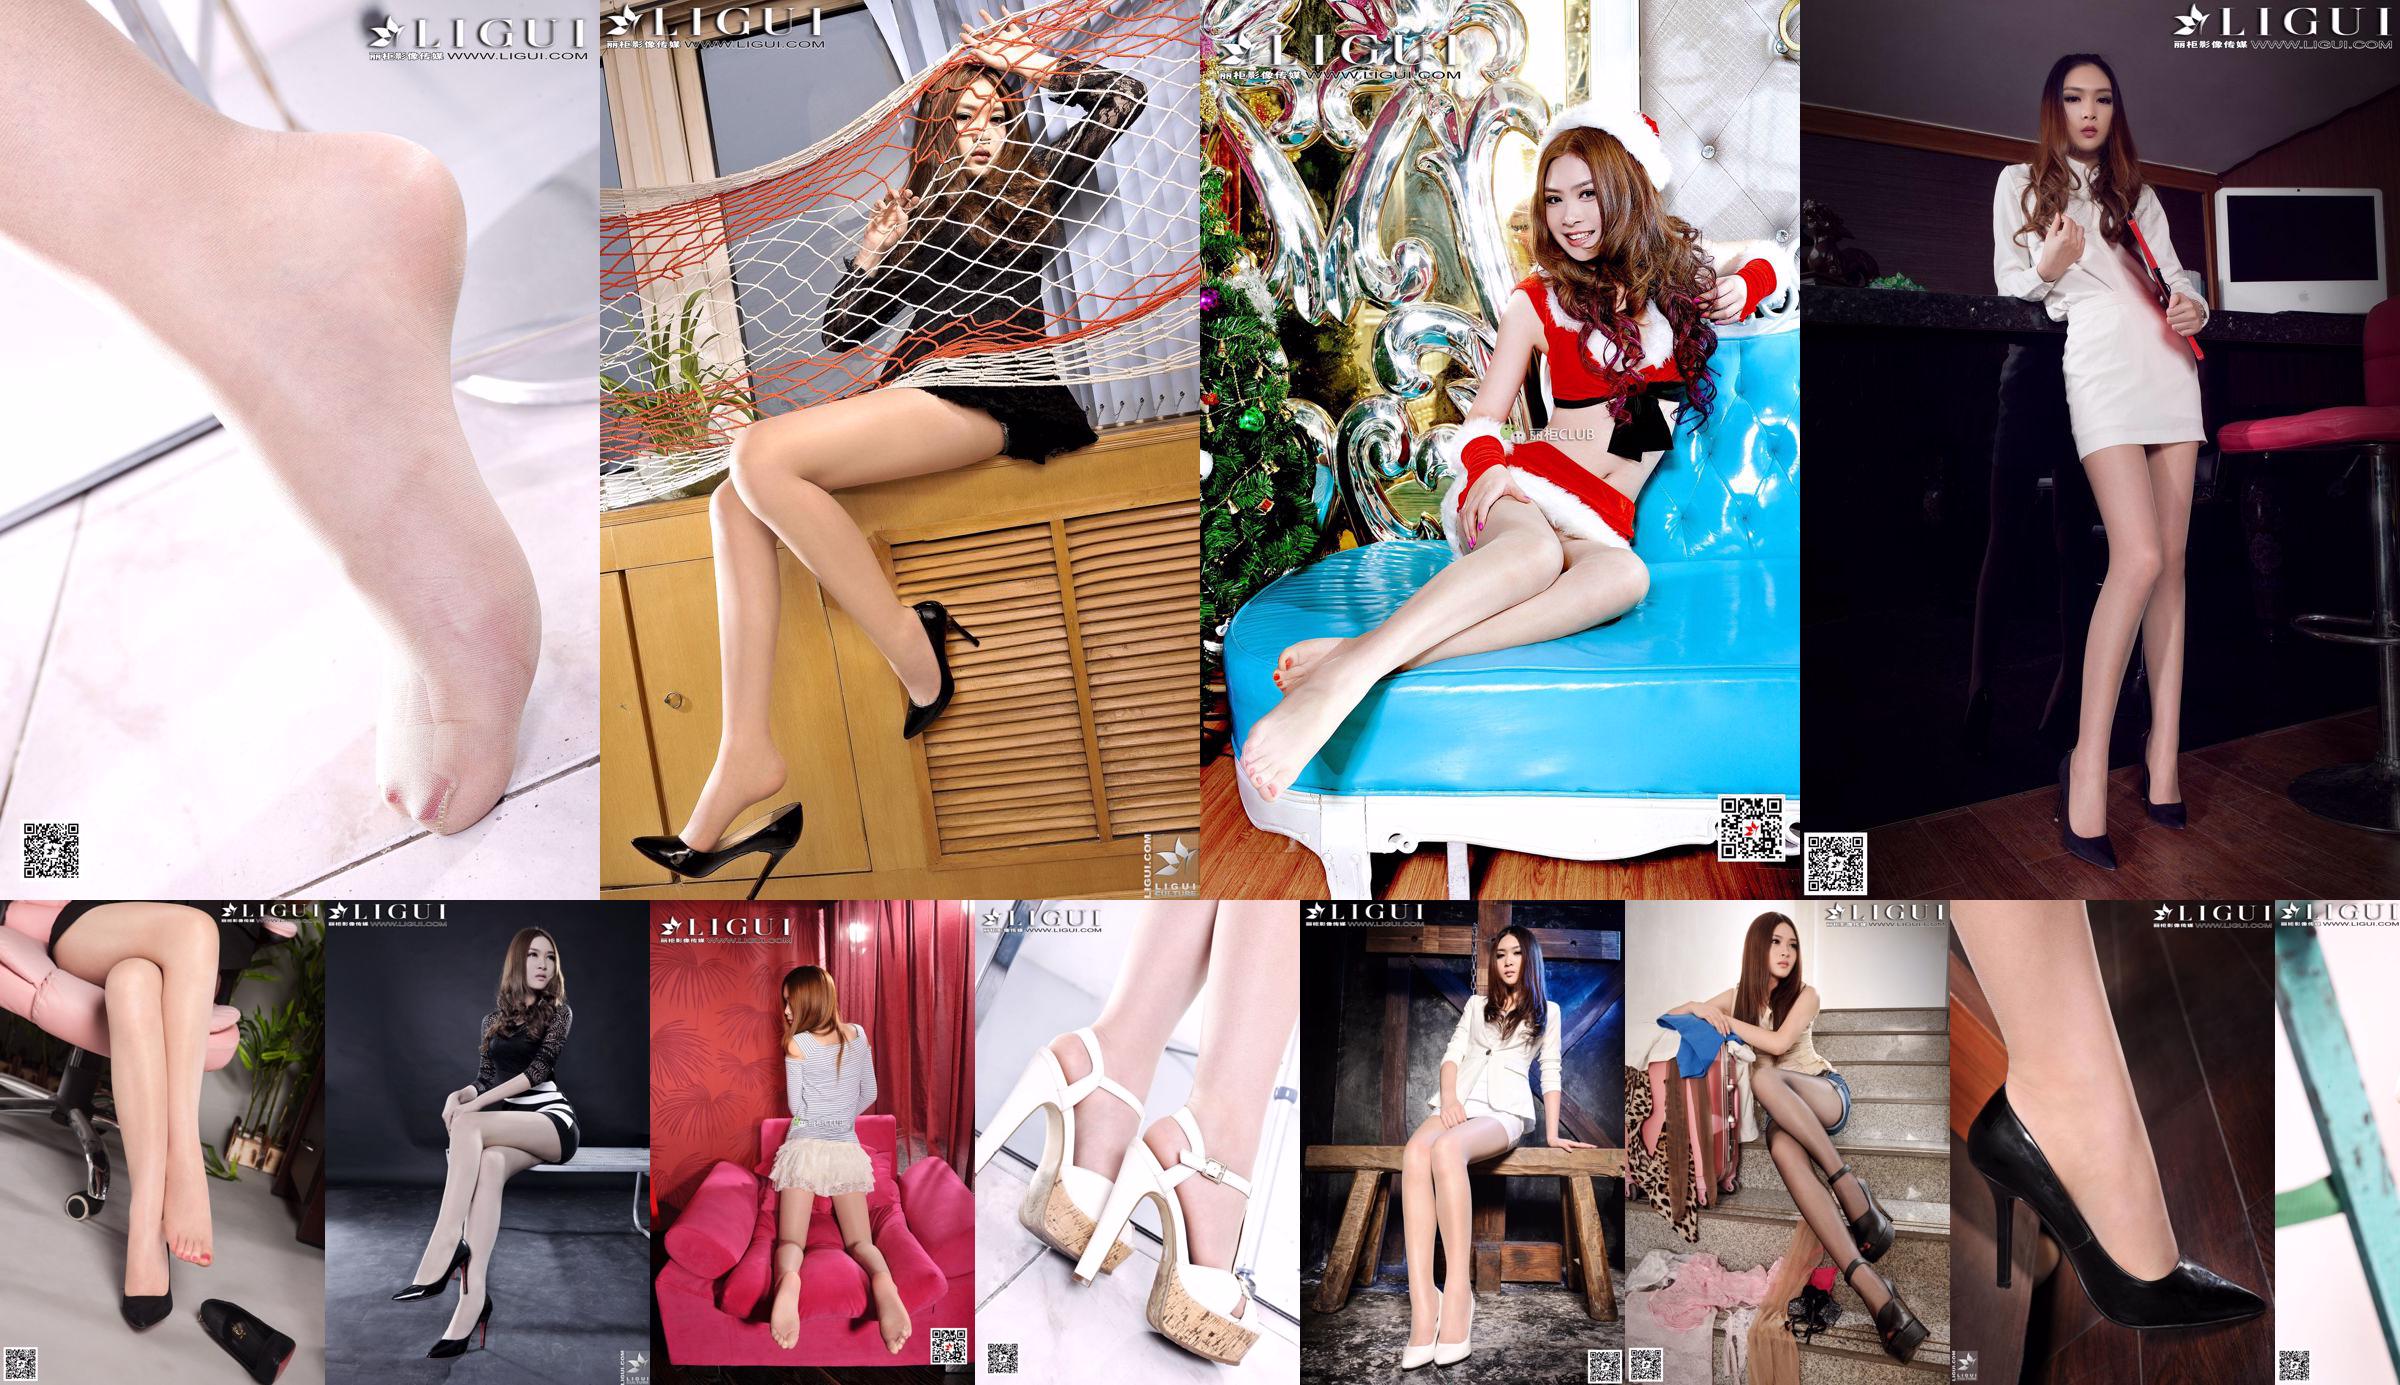 [丽 柜 Ligui] Model Yoona "Cheongsam na wysokim obcasie wieprzowym" No.08b7a2 Strona 1